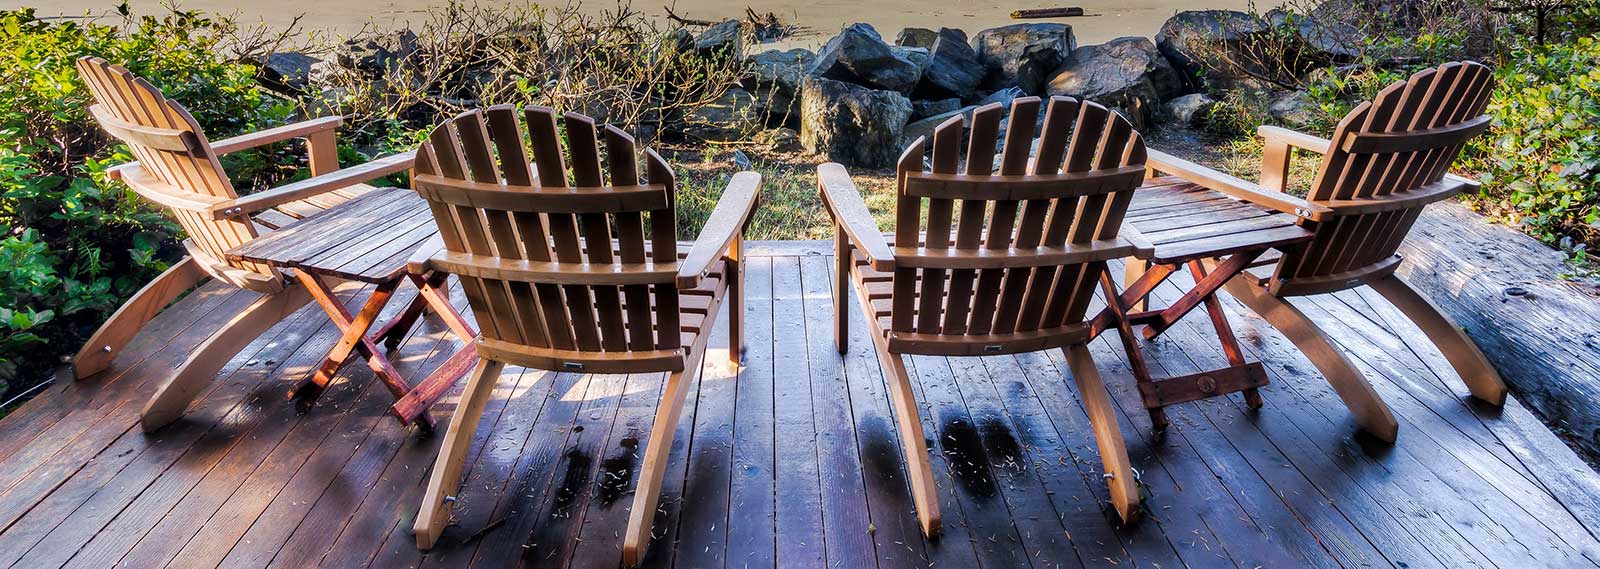 Make Money Woodworking - Adirondack Chairs